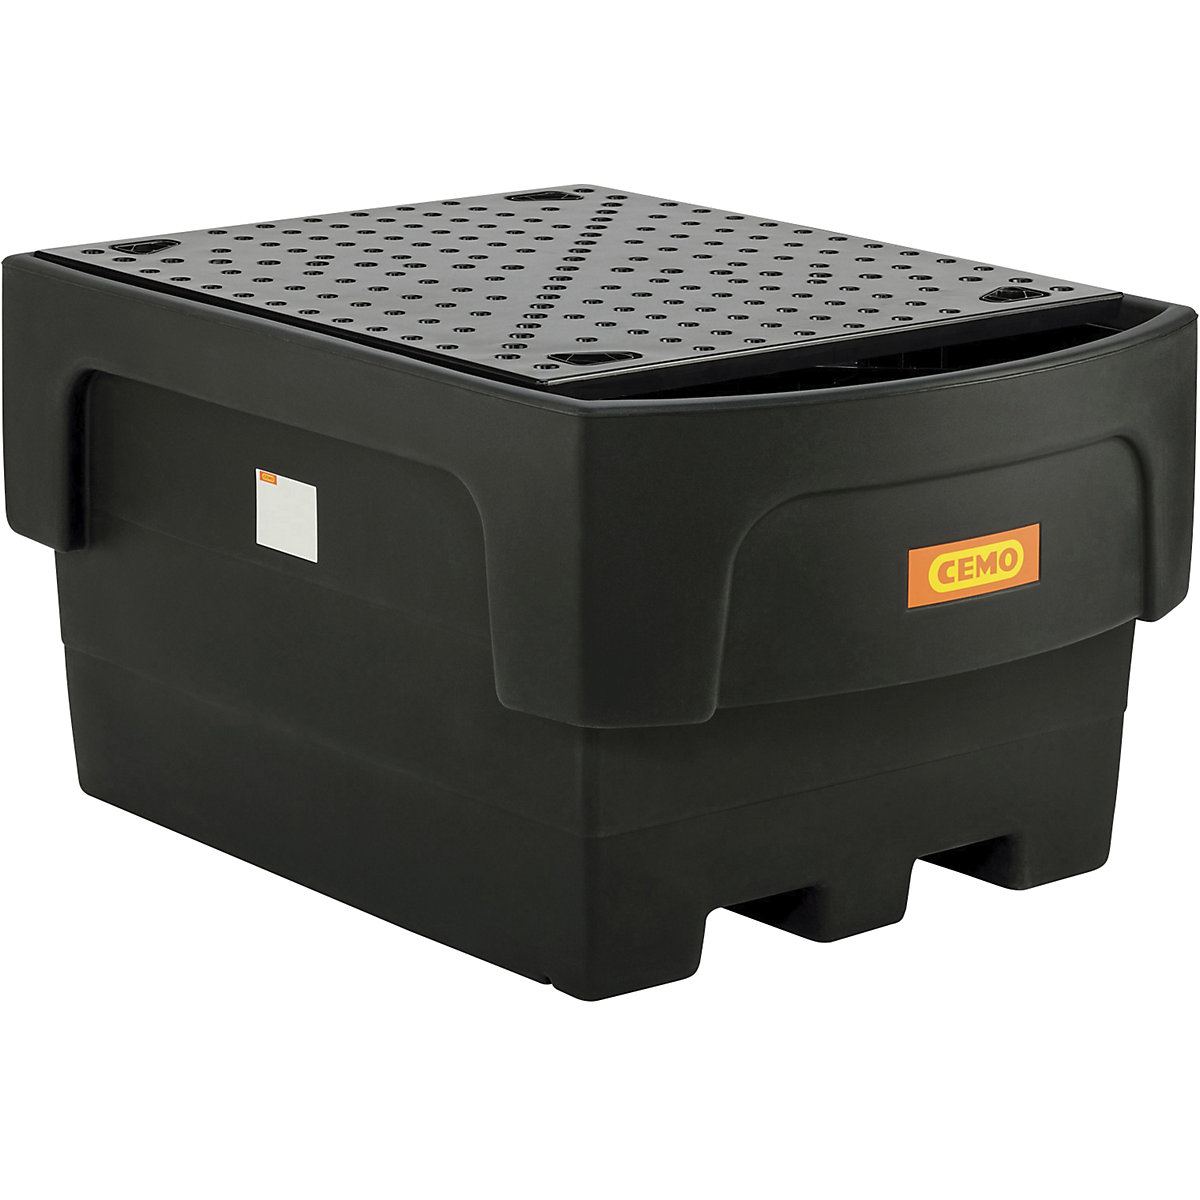 Cubeta colectora de PE para contenedores depósito IBC/KTC – CEMO, para 1 IBC/KTC con recipiente de trasiego antepuesto, con placa perforada de PE-3